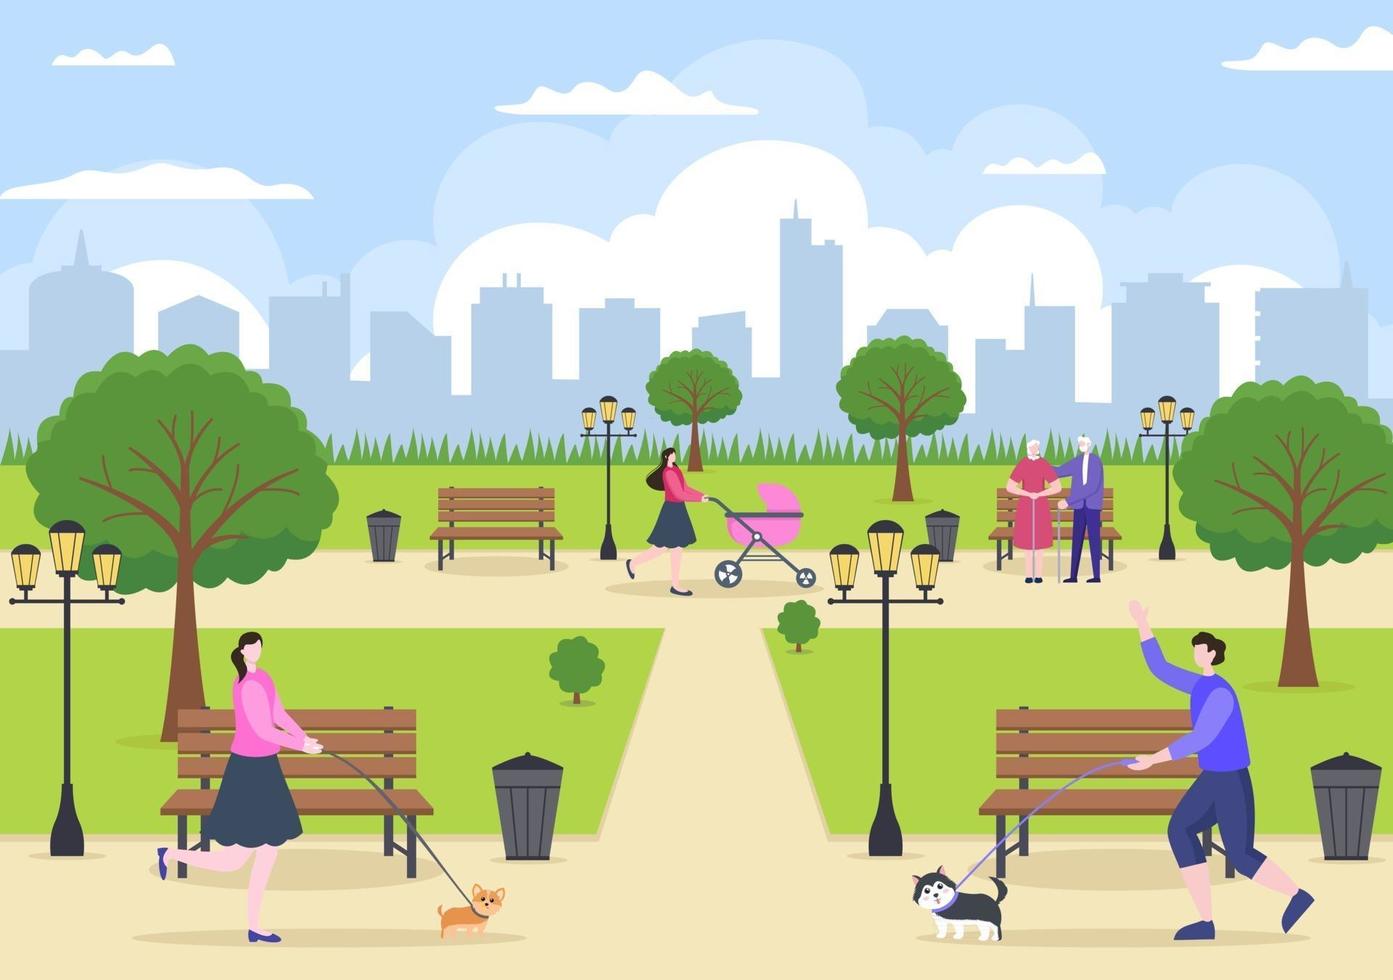 Ilustración del parque de la ciudad para personas que hacen deporte, se relajan, juegan o se recrean con árboles verdes y césped. paisaje urbano fondo vector